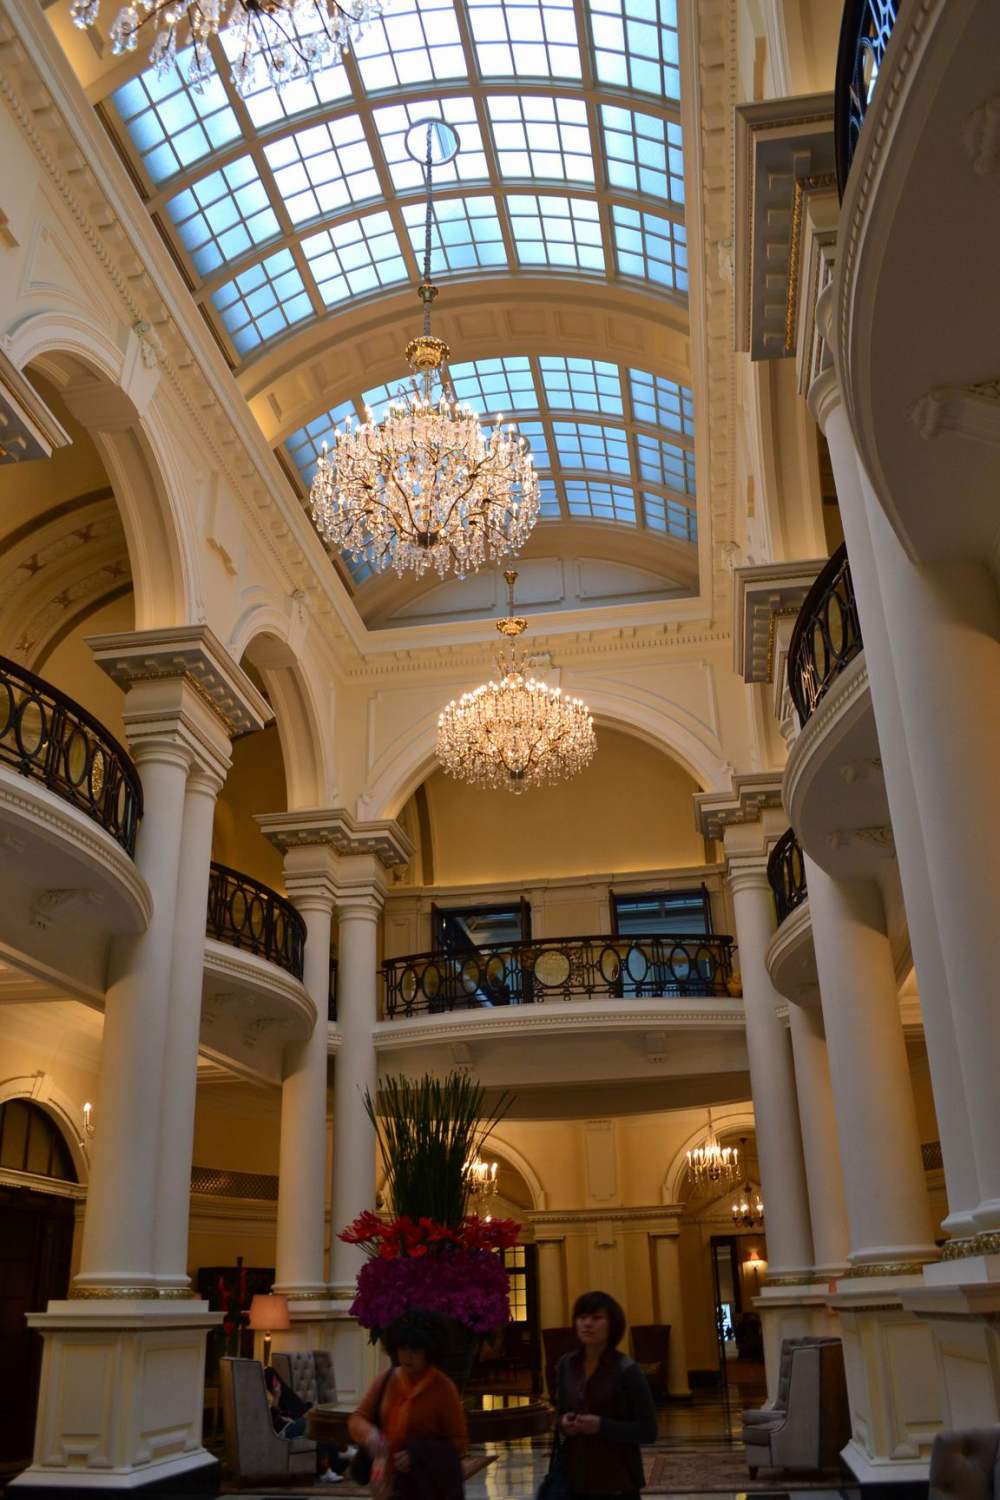 上海华尔道夫酒店(The Waldorf Astoria OnTheBund)(HBA)10.9第10页更新_调整大小 DSC_0614.JPG